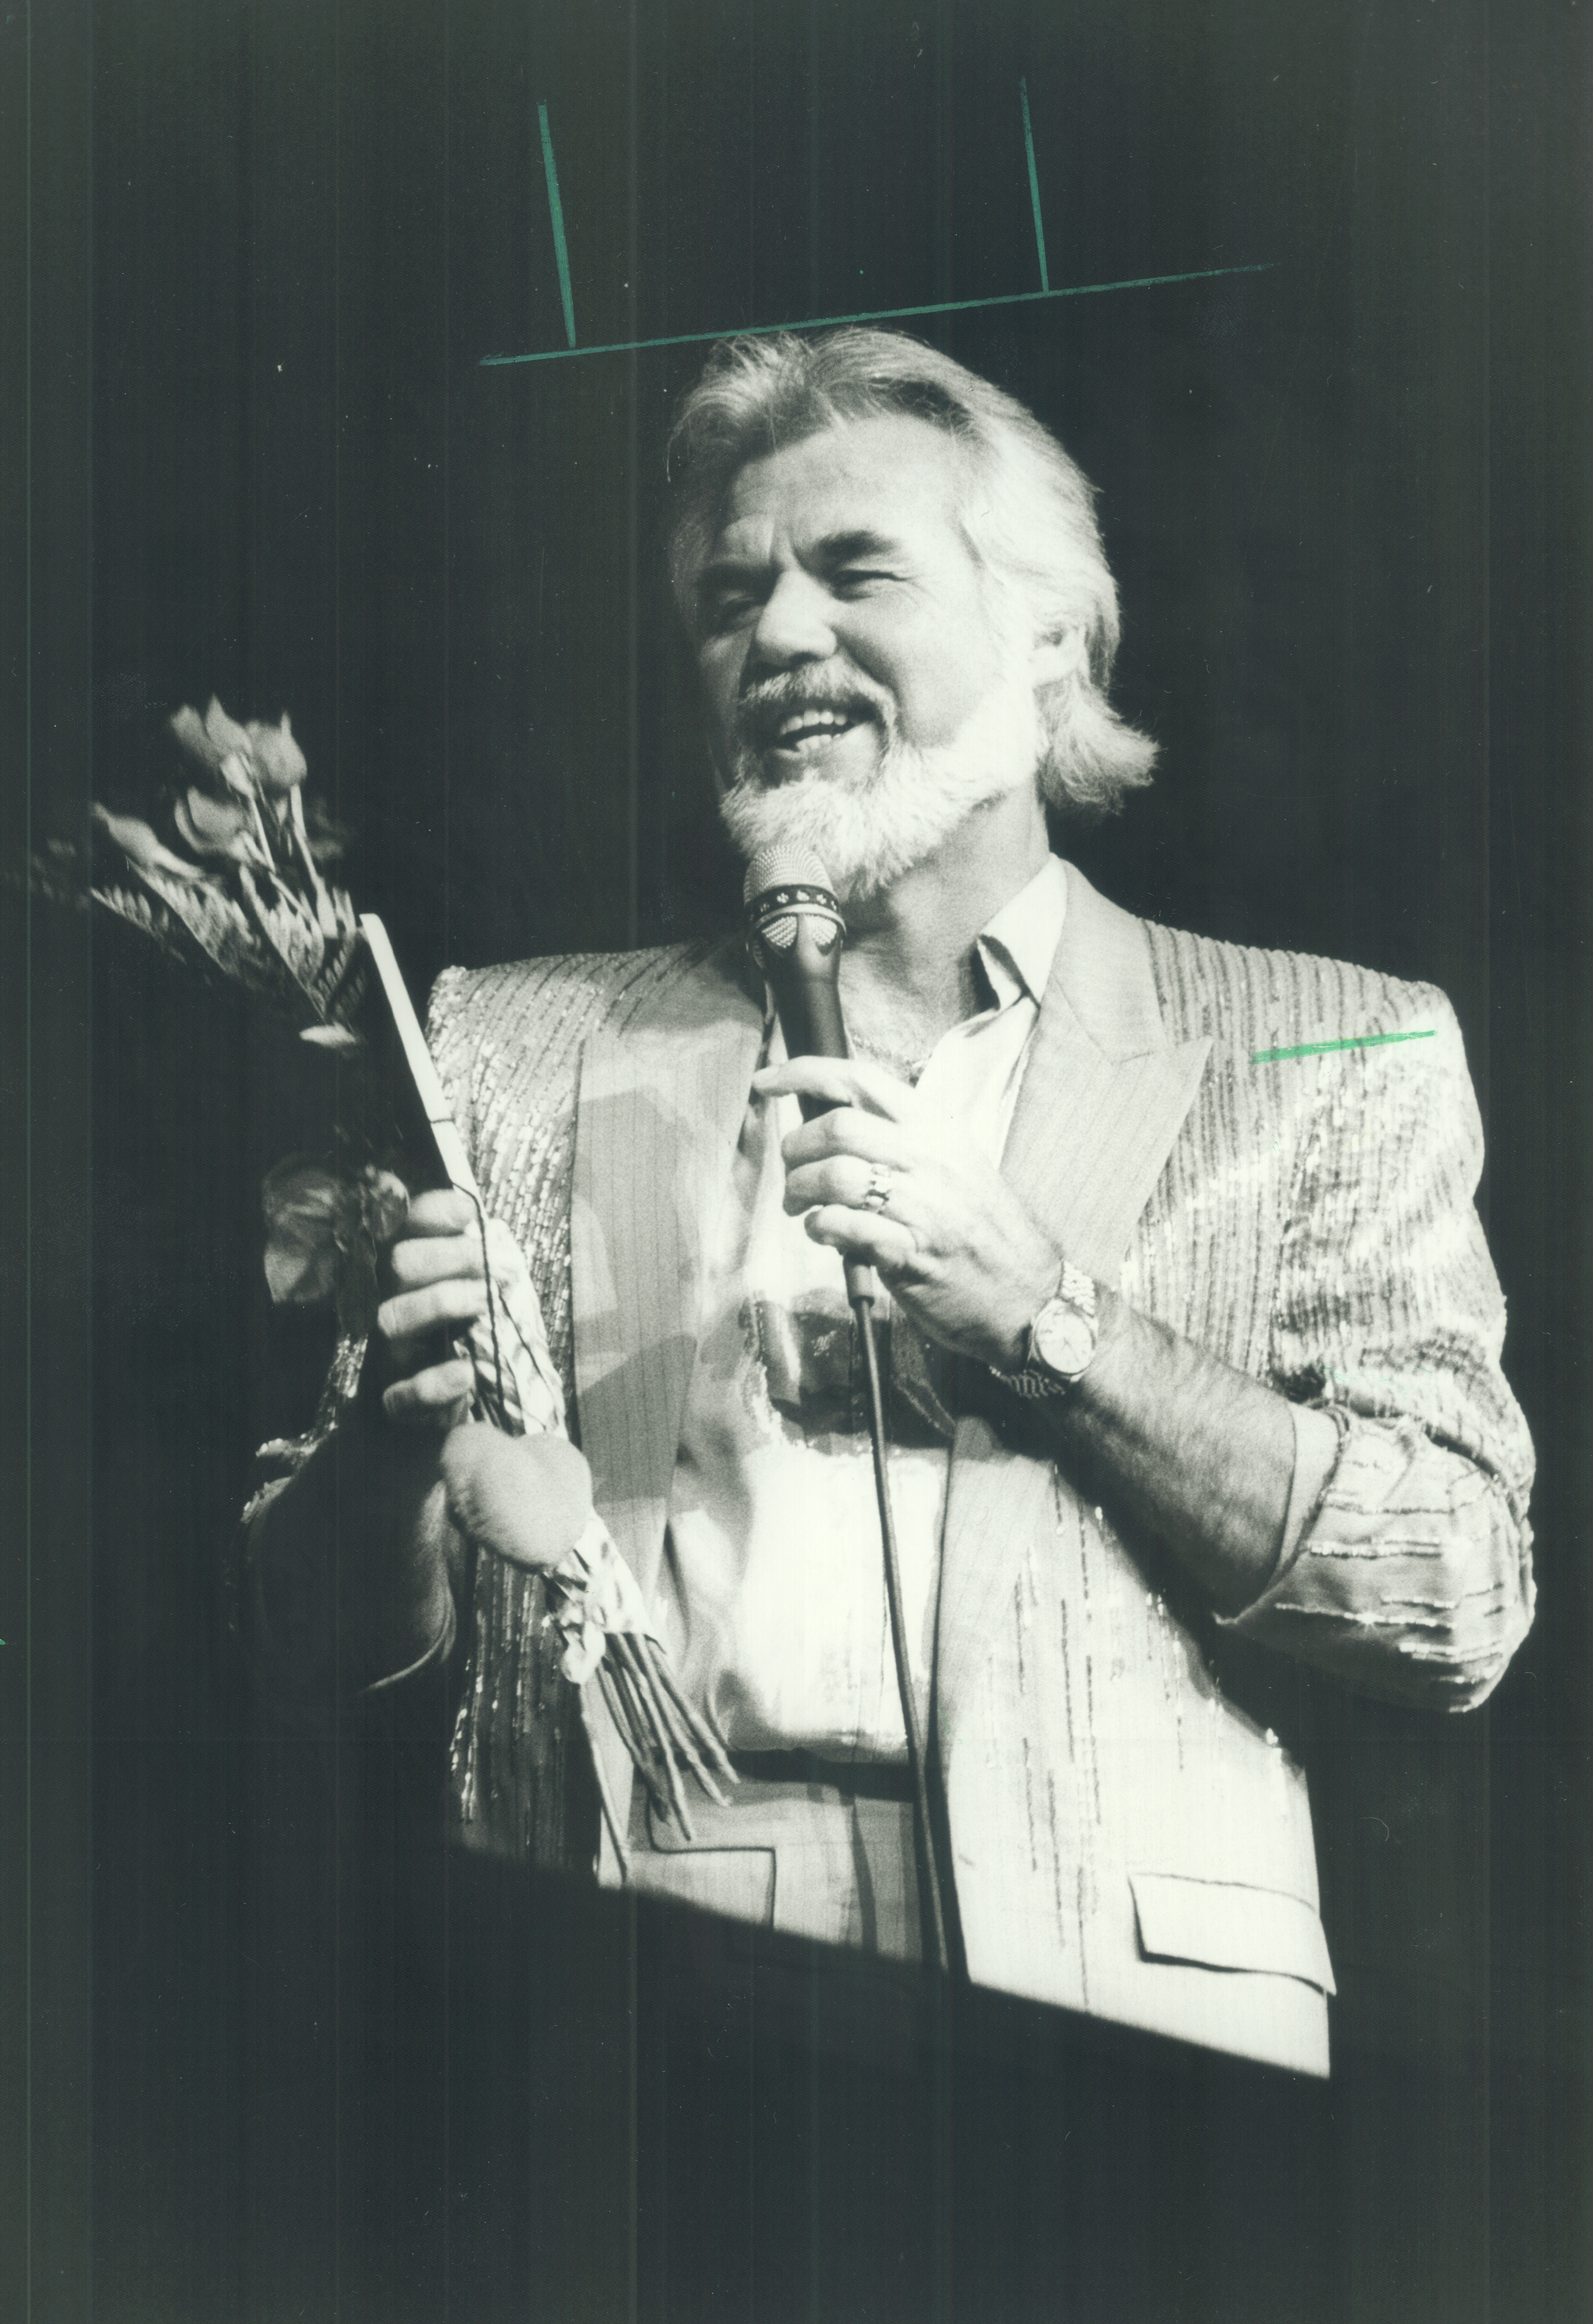 Le musicien à la tribune de l'Exposition nationale canadienne chantant les chansons qu'il aime le 22 août 1985 | Source : Getty Images